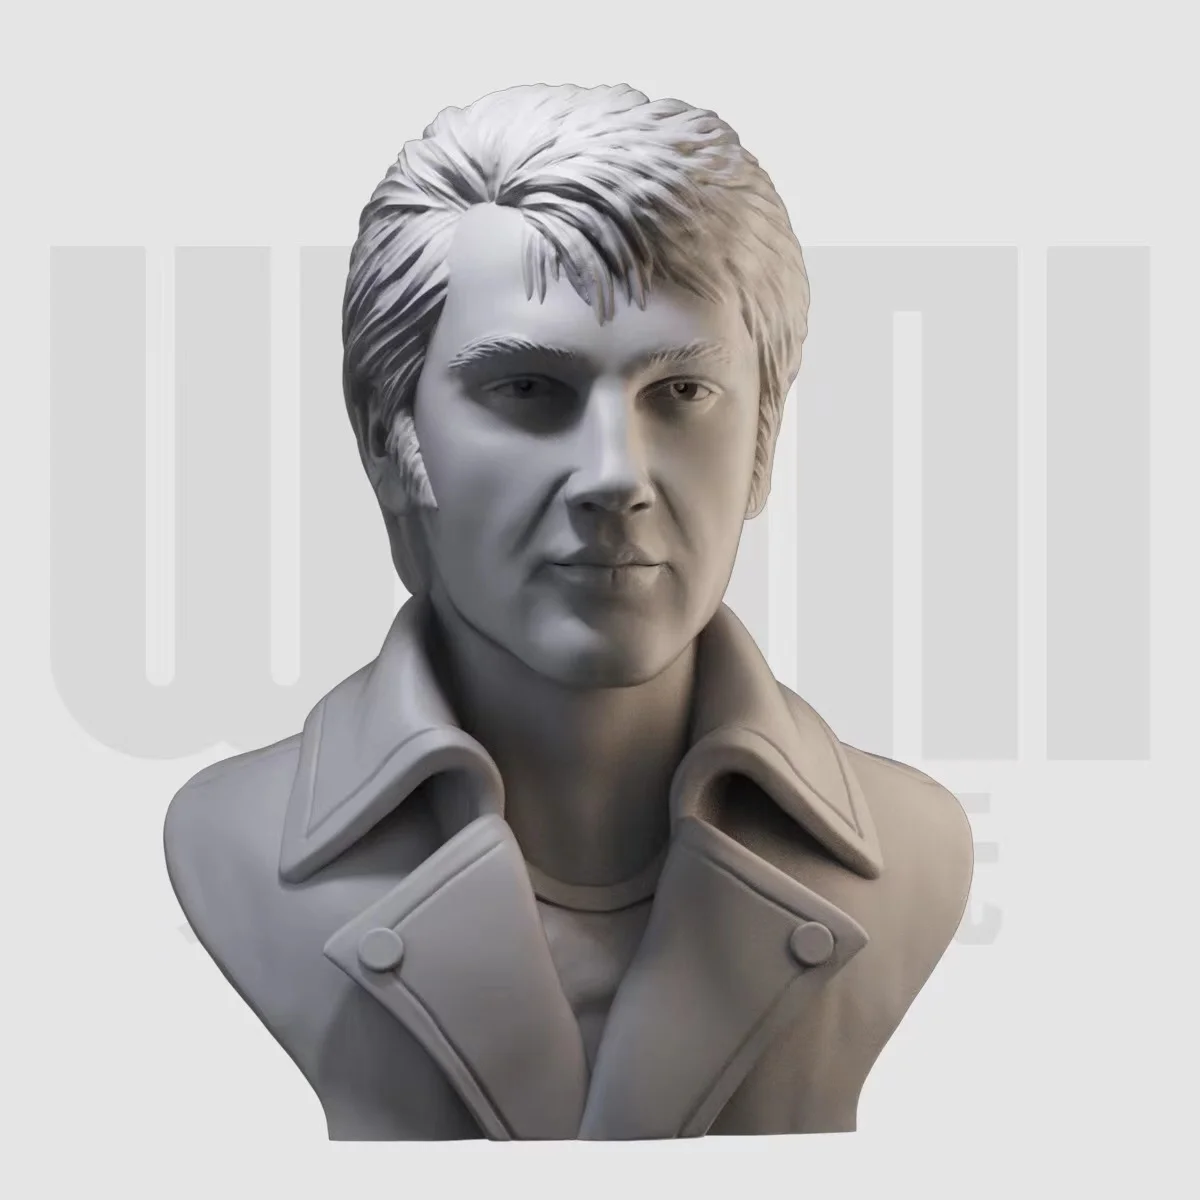 1/10 de Elvis Presley Busto Cantora norte-Americana de Resina Branca, Modelo GK Modelo figura